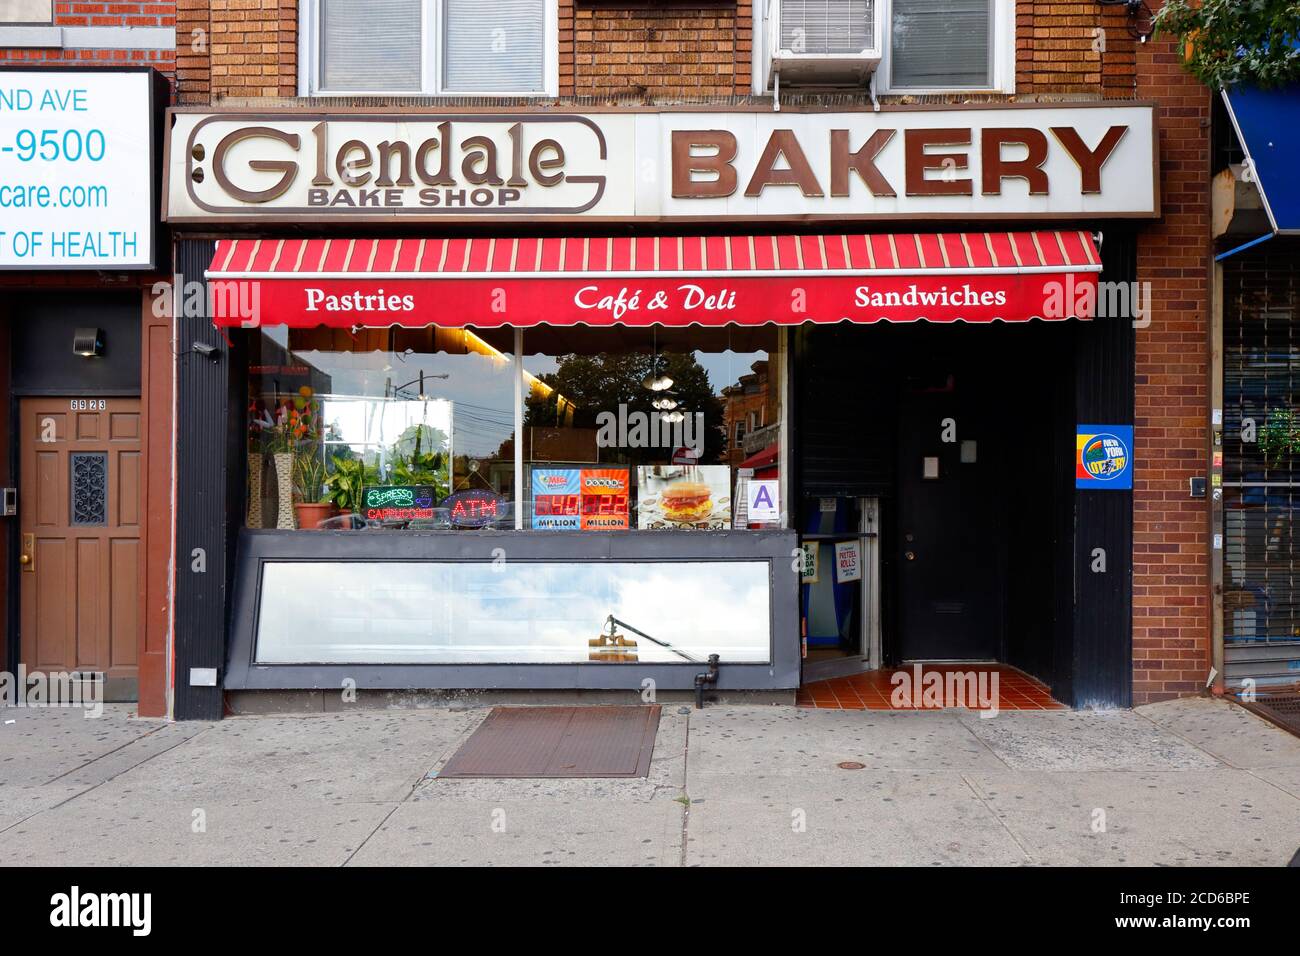 Glendale Bake Shop, 6925 Grand Ave, Queens, Nueva York. Foto del escaparate de Nueva York de una panadería en el barrio de Maspeth. Foto de stock